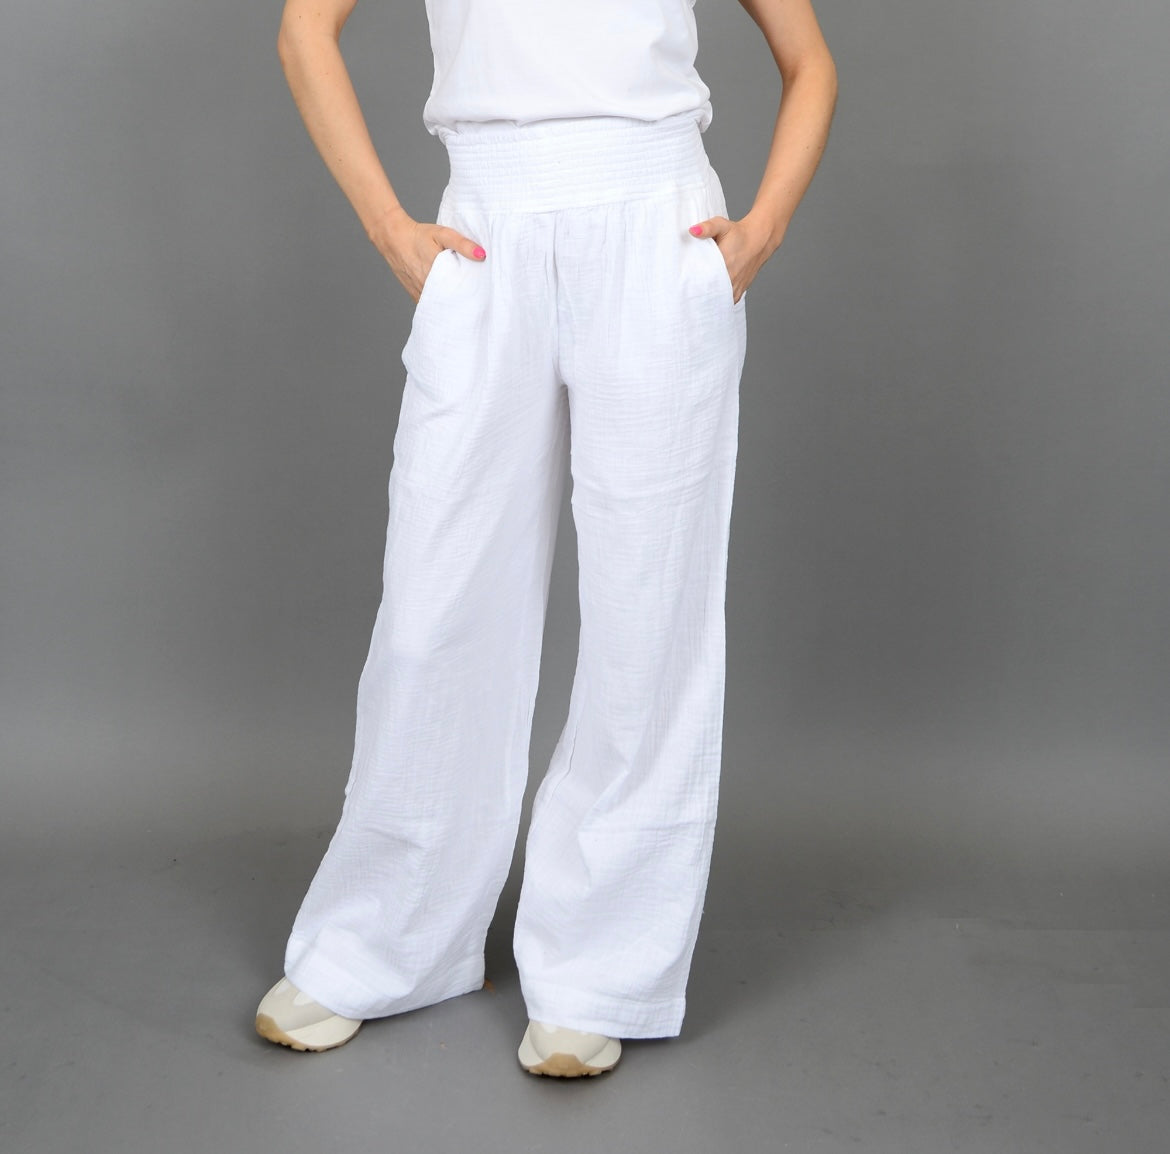 RD Style Anokia Gauze Pants - White